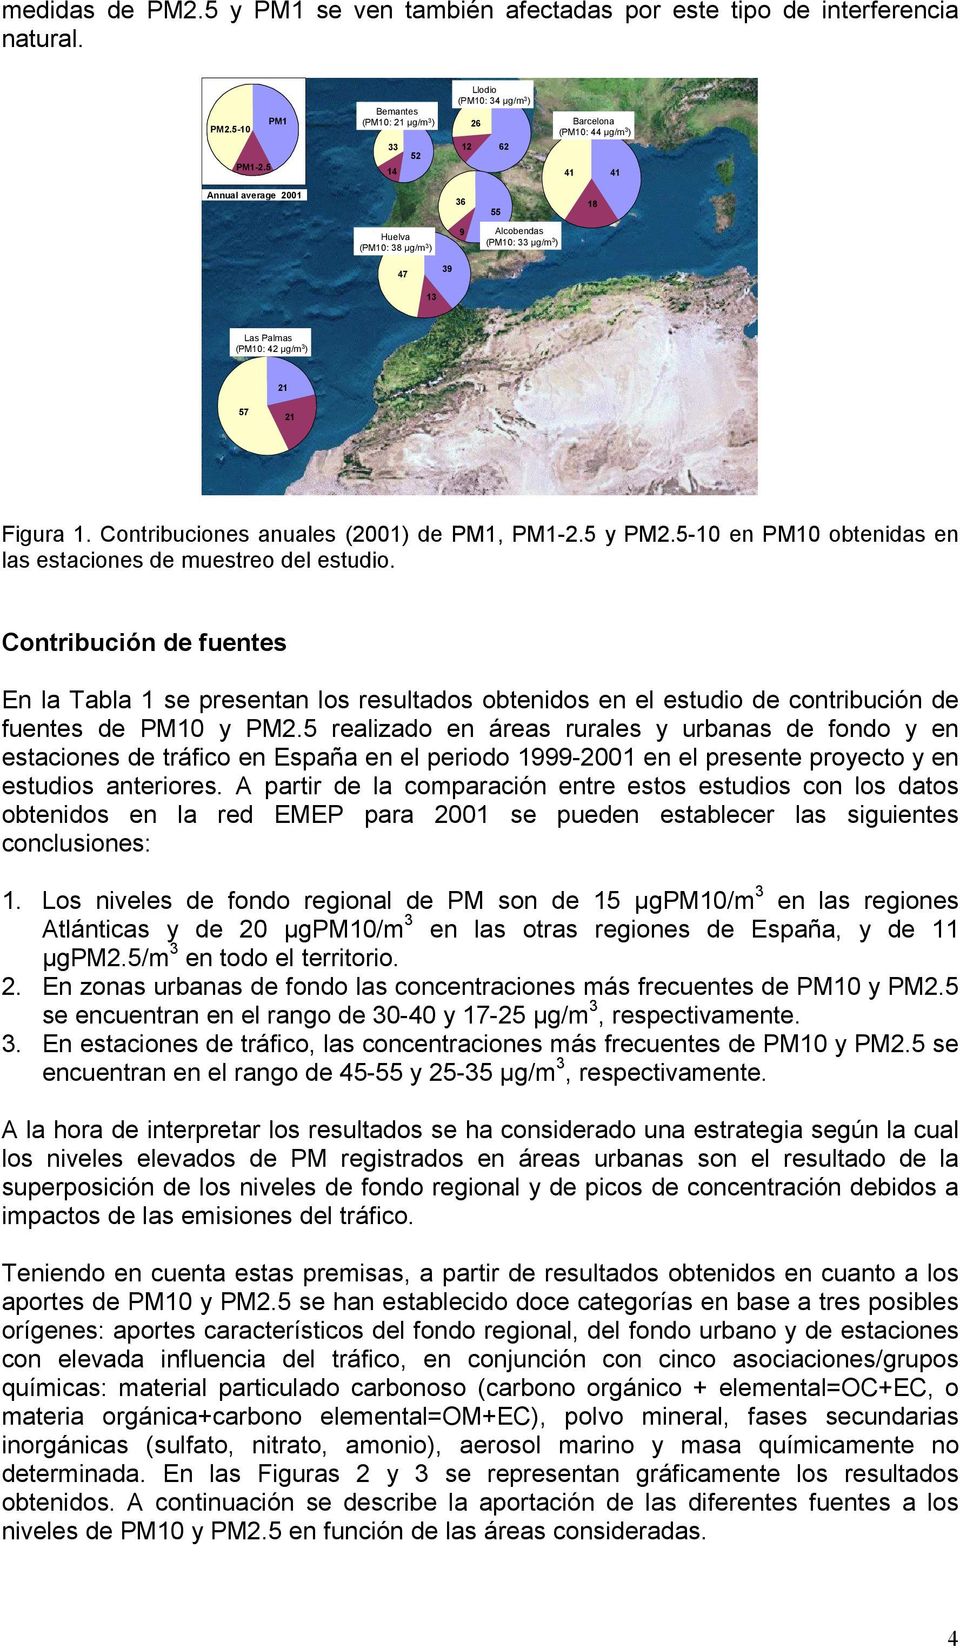 39 13 Las Palmas (PM10: 42 µg/m 3 ) 21 57 21 Figura 1. Contribuciones anuales (2001) de PM1, PM1-2.5 y PM2.5-10 en PM10 obtenidas en las estaciones de muestreo del estudio.